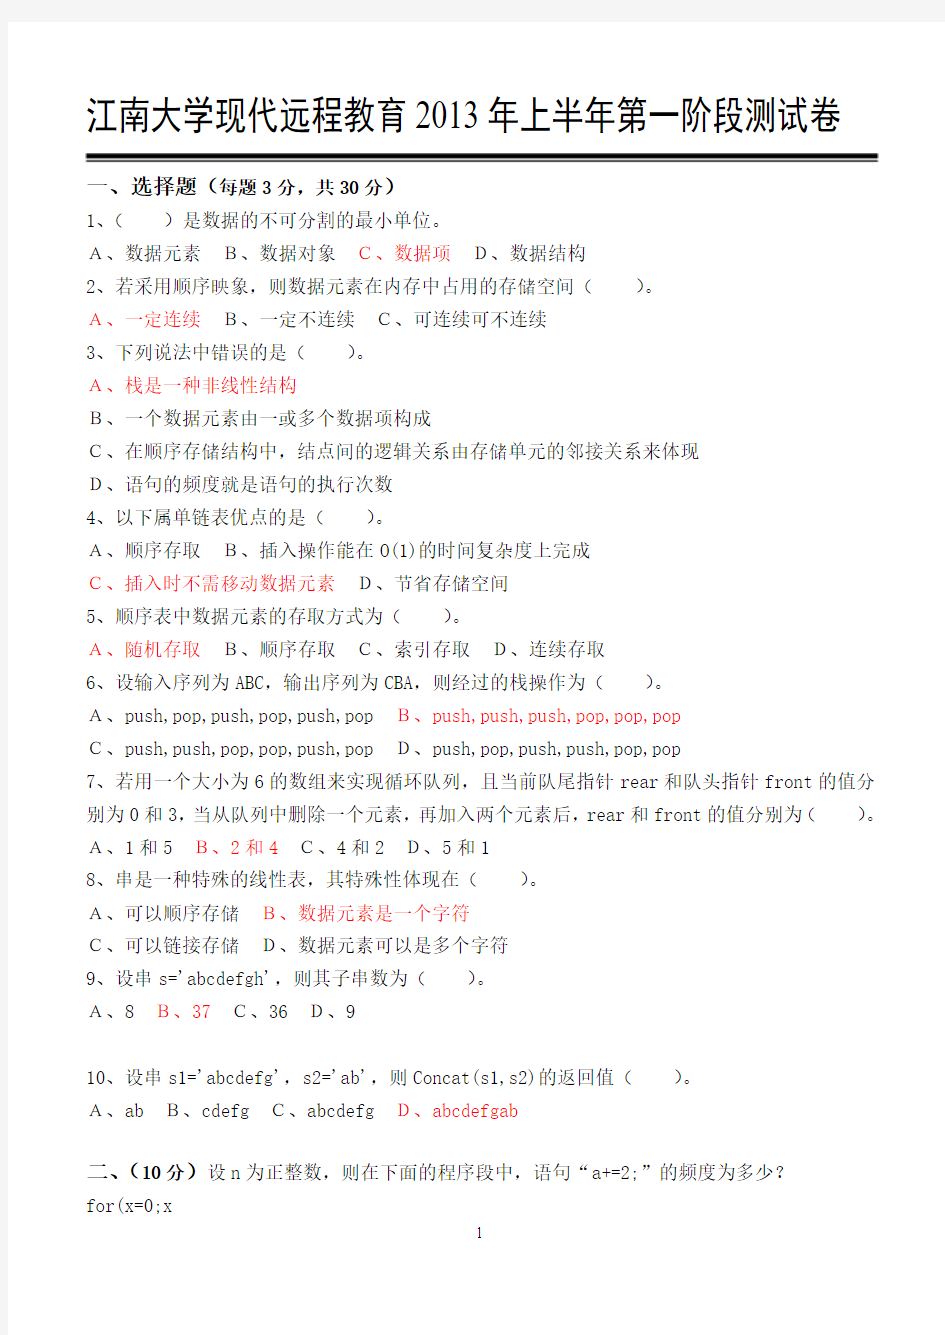 江南大学现代远程教育2013年上半年全阶段数据结构